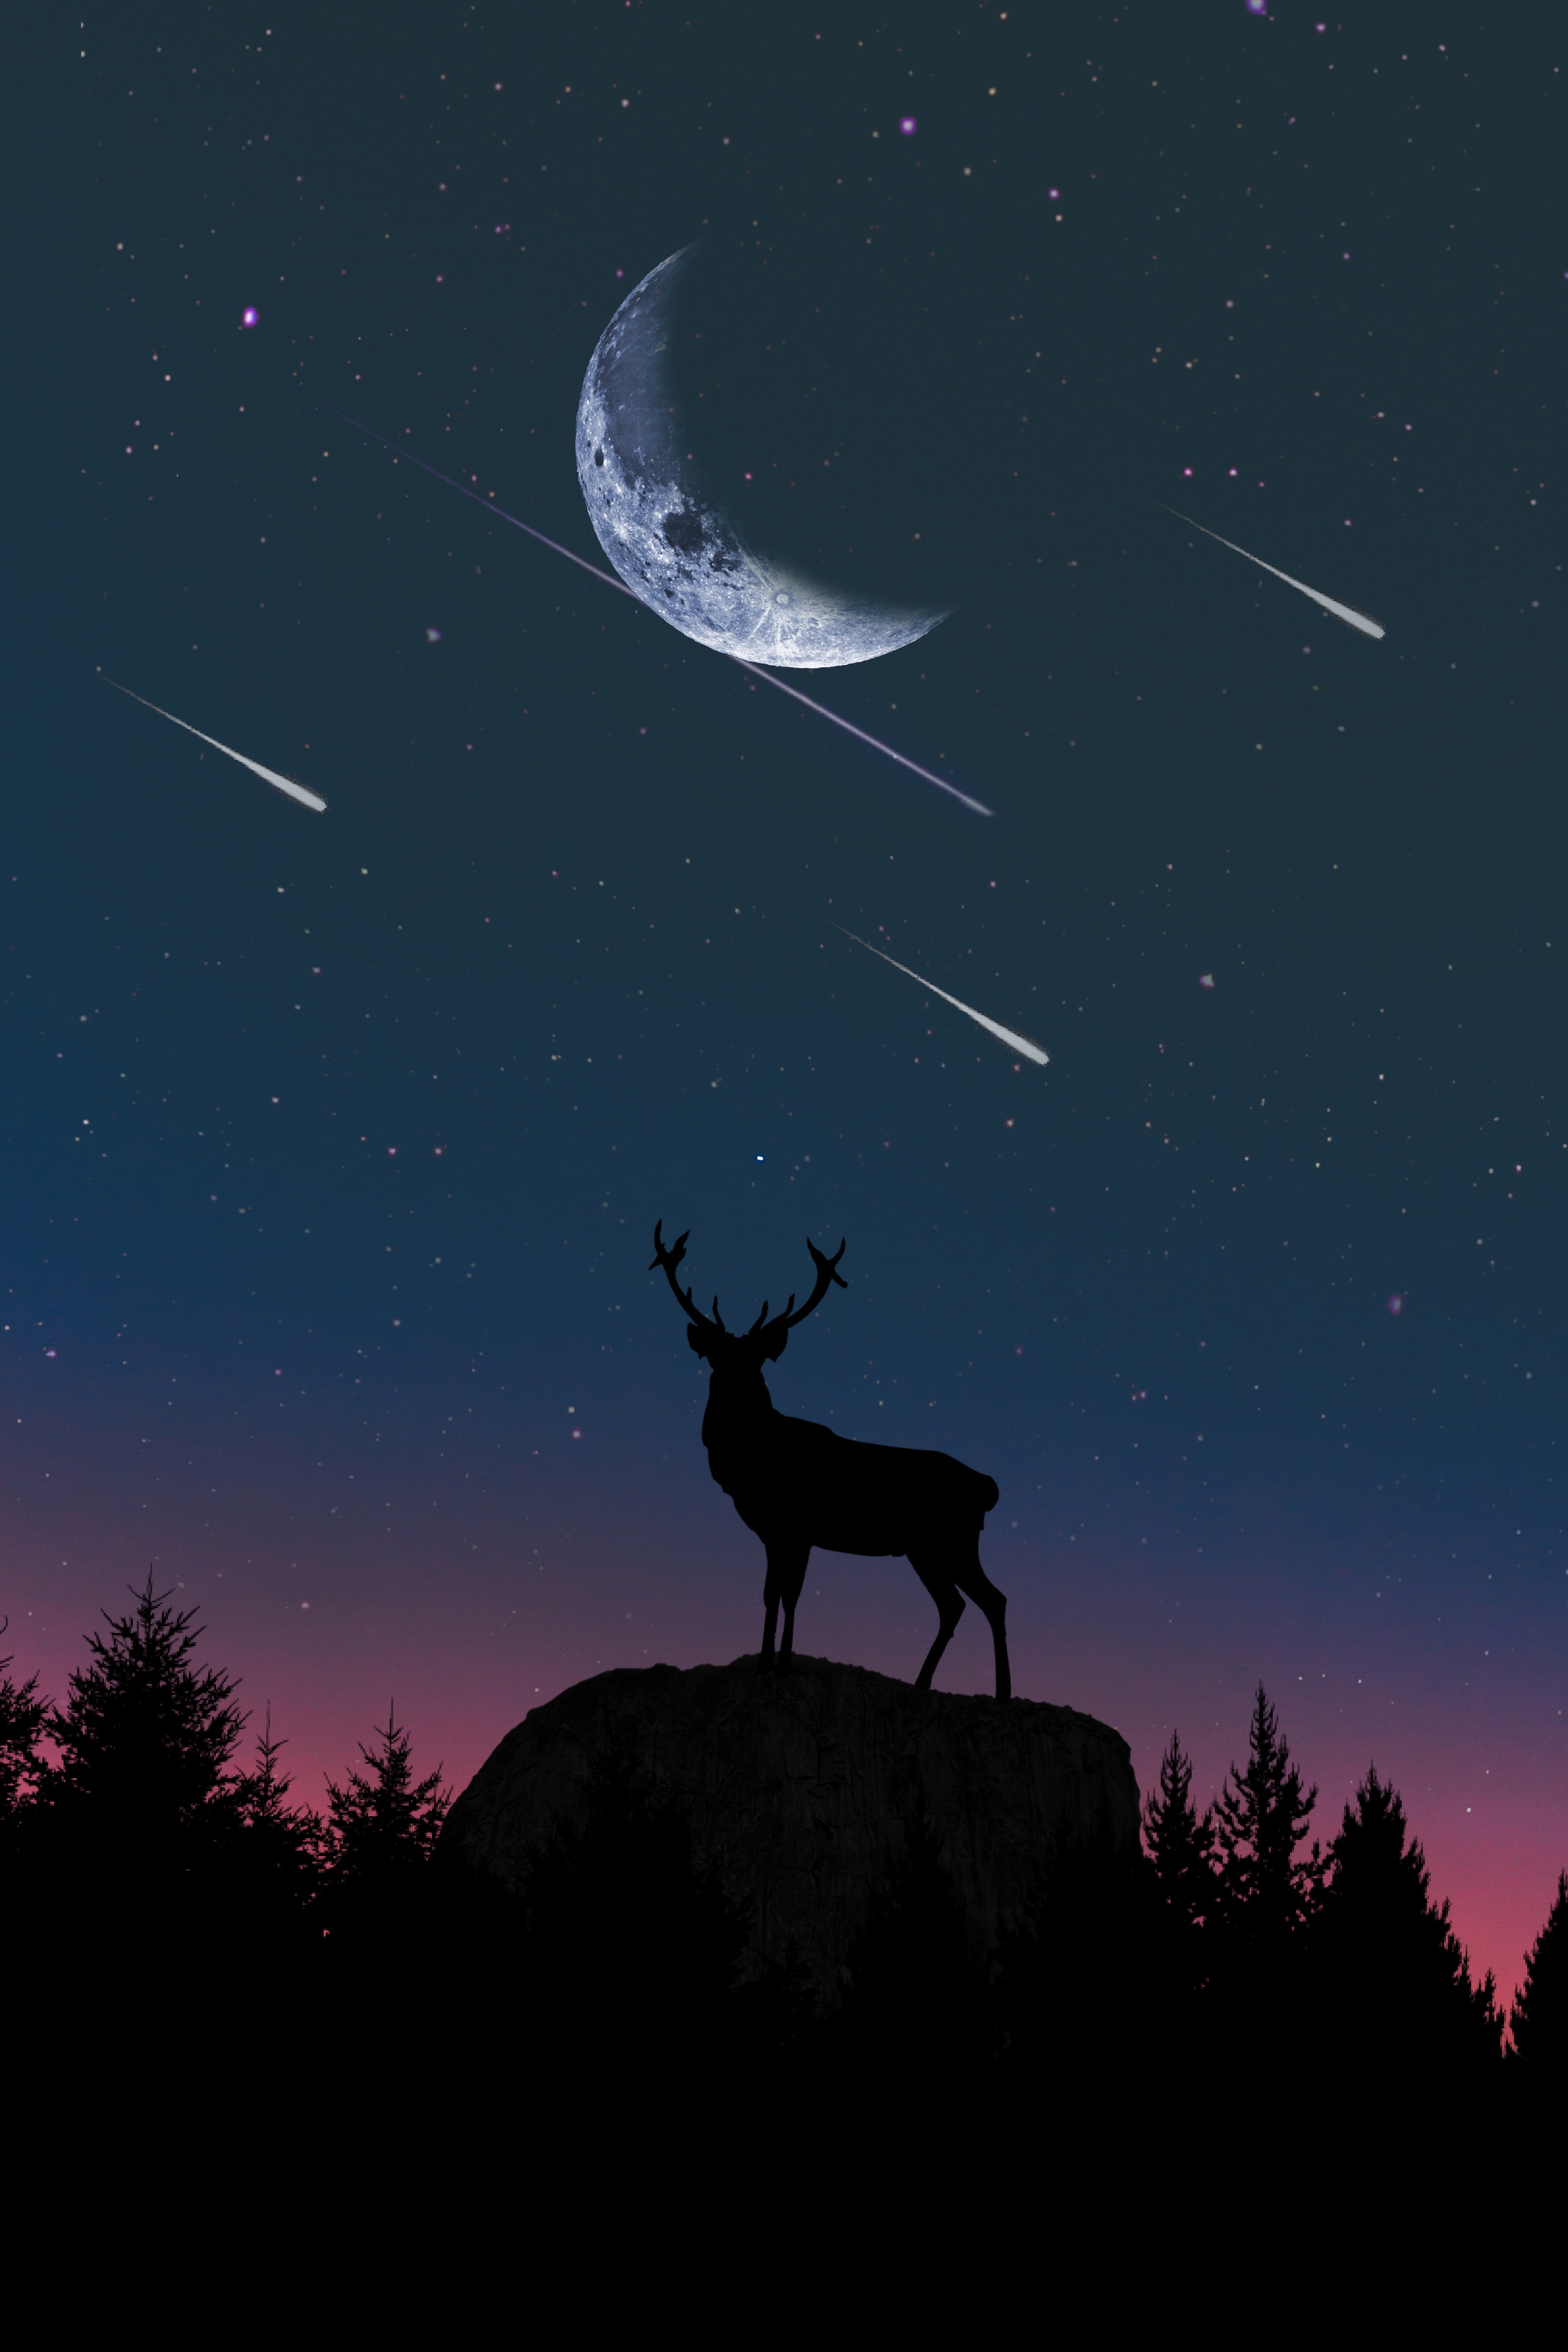 Бесплатное фото Силуэт оленя на фоне ночного неба с падающими звездами